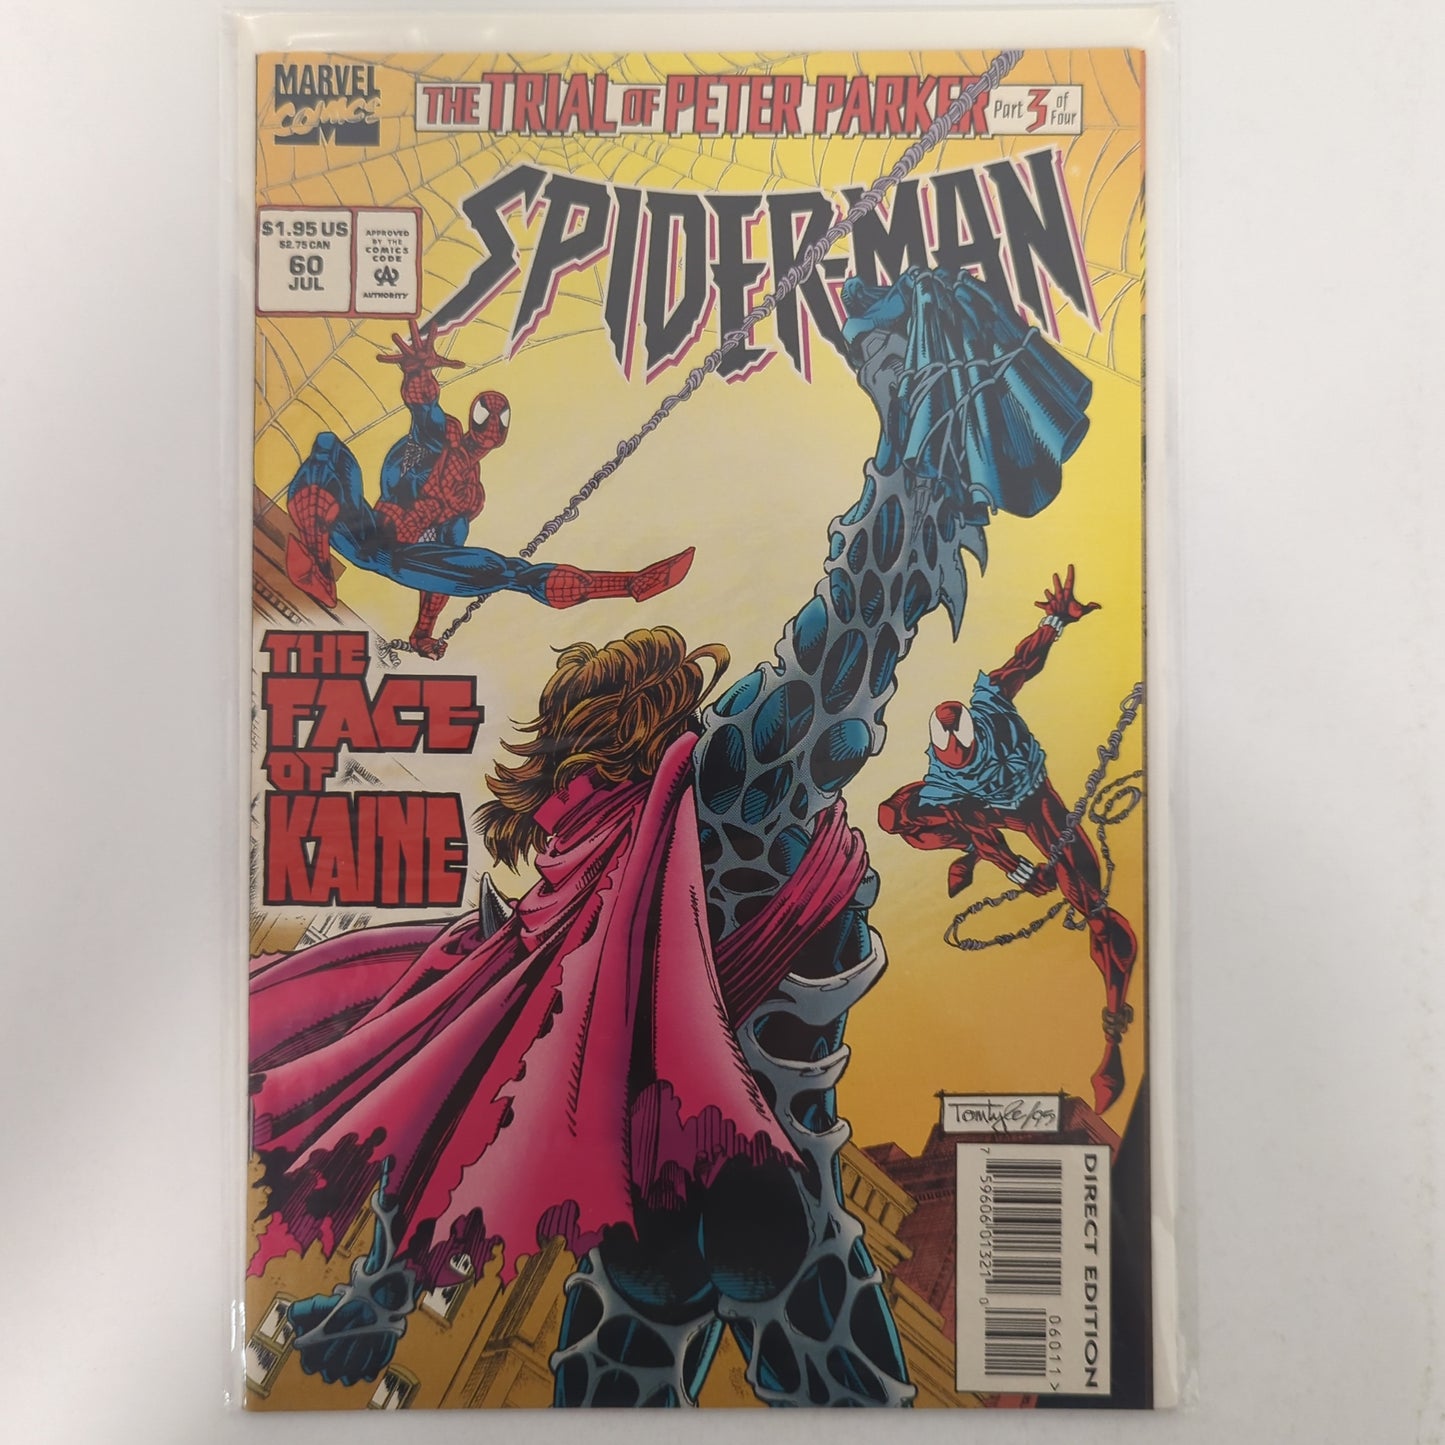 Spider-Man #60